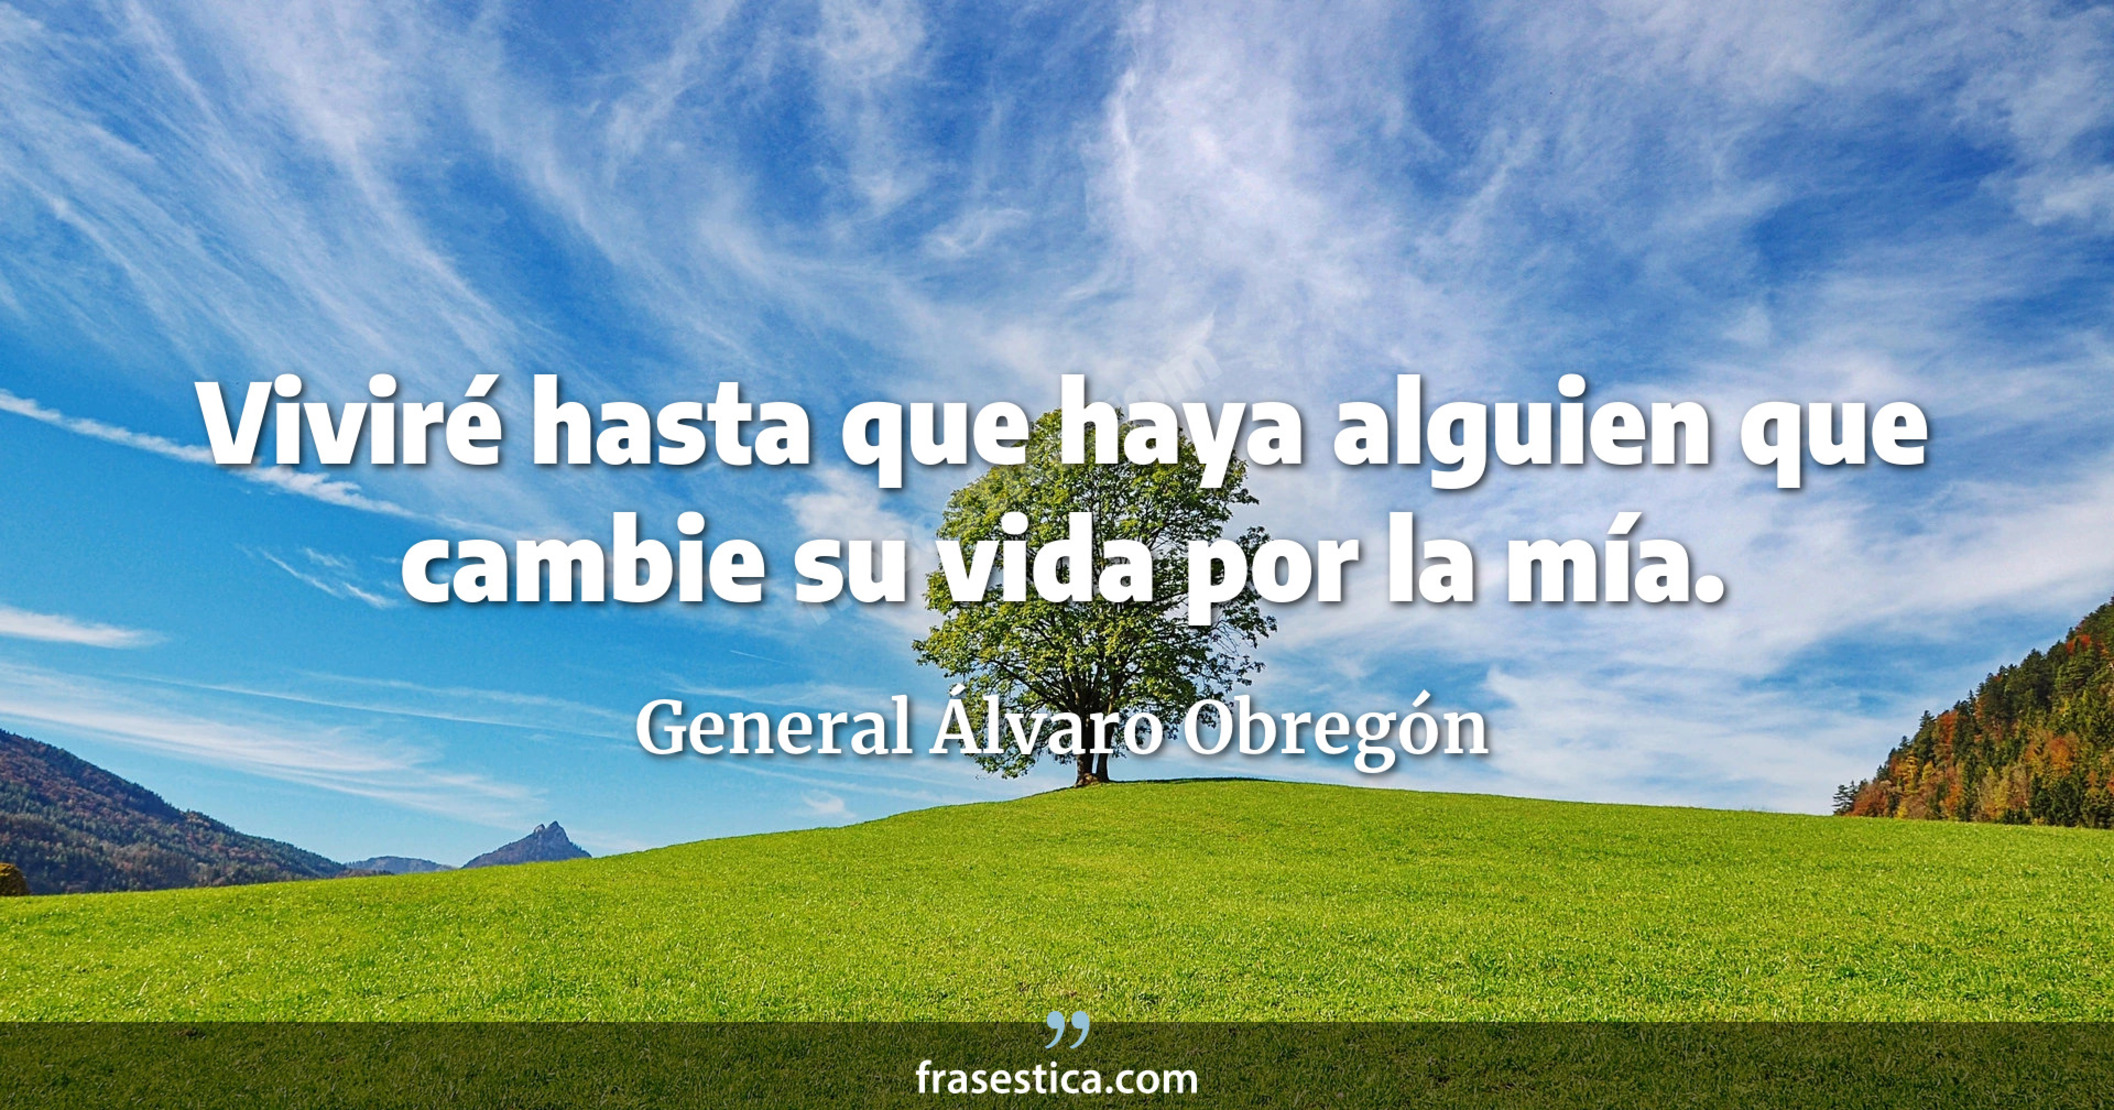 Viviré hasta que haya alguien que cambie su vida por la mía. - General Álvaro Obregón